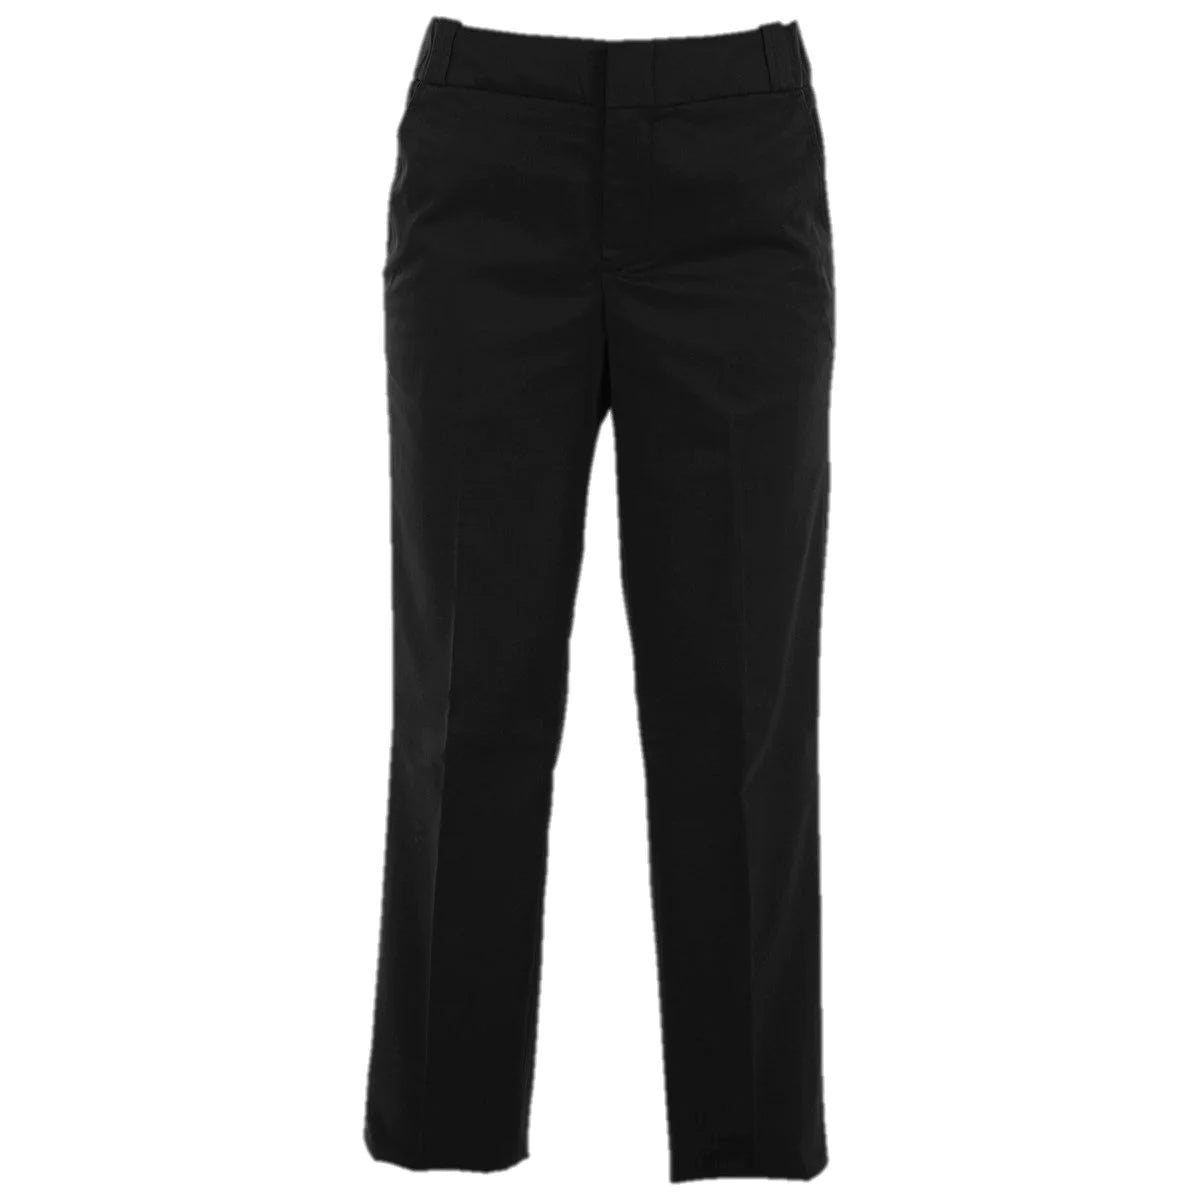 Buy Elbeco Tek3 Women's Navy 4-Pocket Pants Online